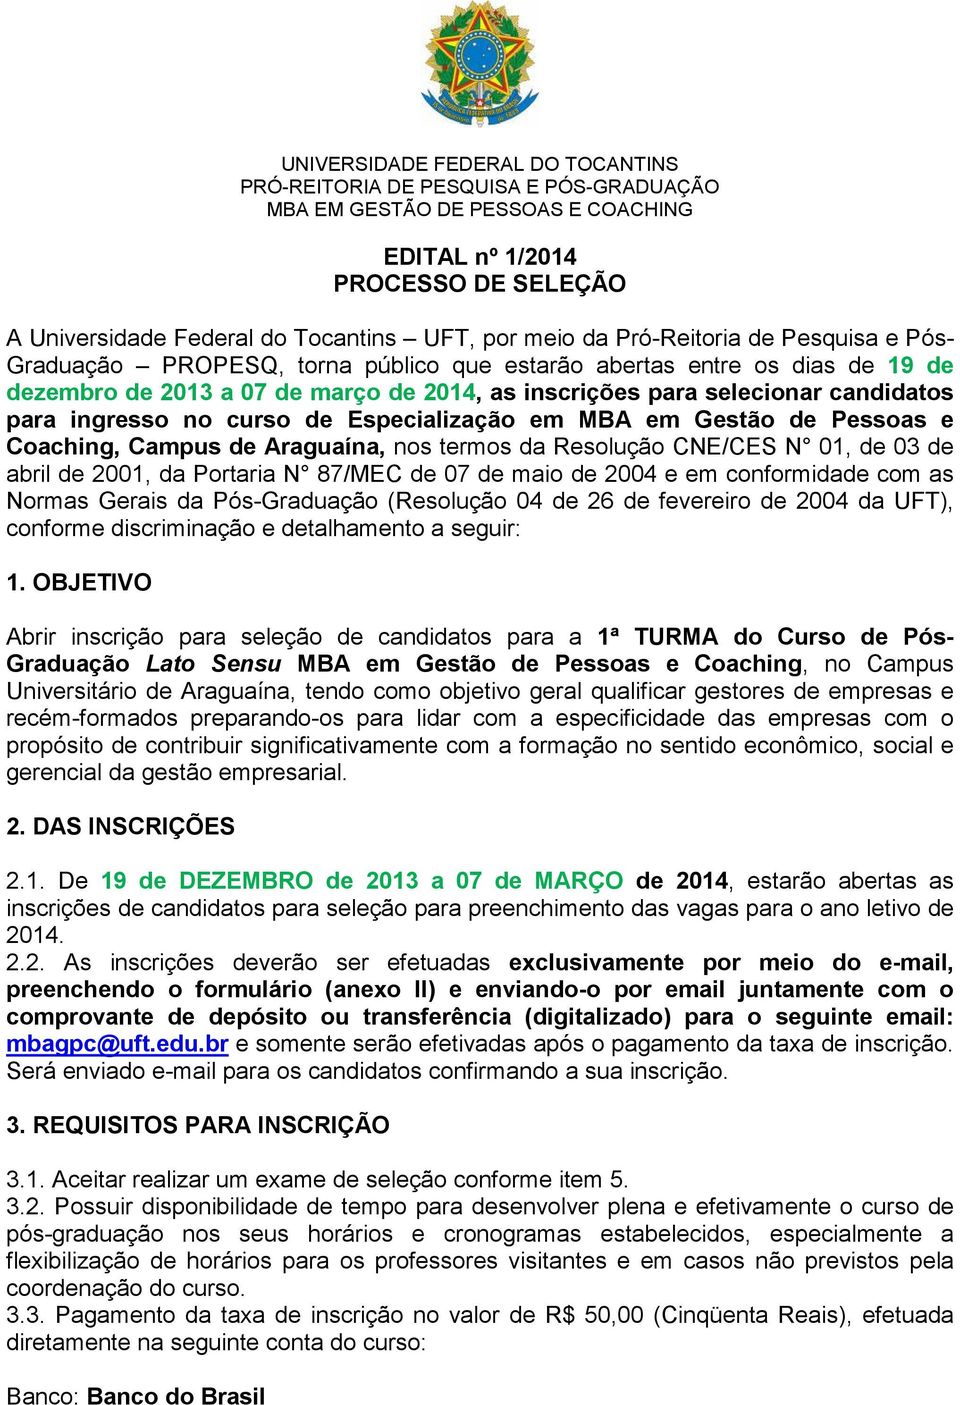 ingresso no curso de Especialização em MBA em Gestão de Pessoas e Coaching, Campus de Araguaína, nos termos da Resolução CNE/CES N 01, de 03 de abril de 2001, da Portaria N 87/MEC de 07 de maio de